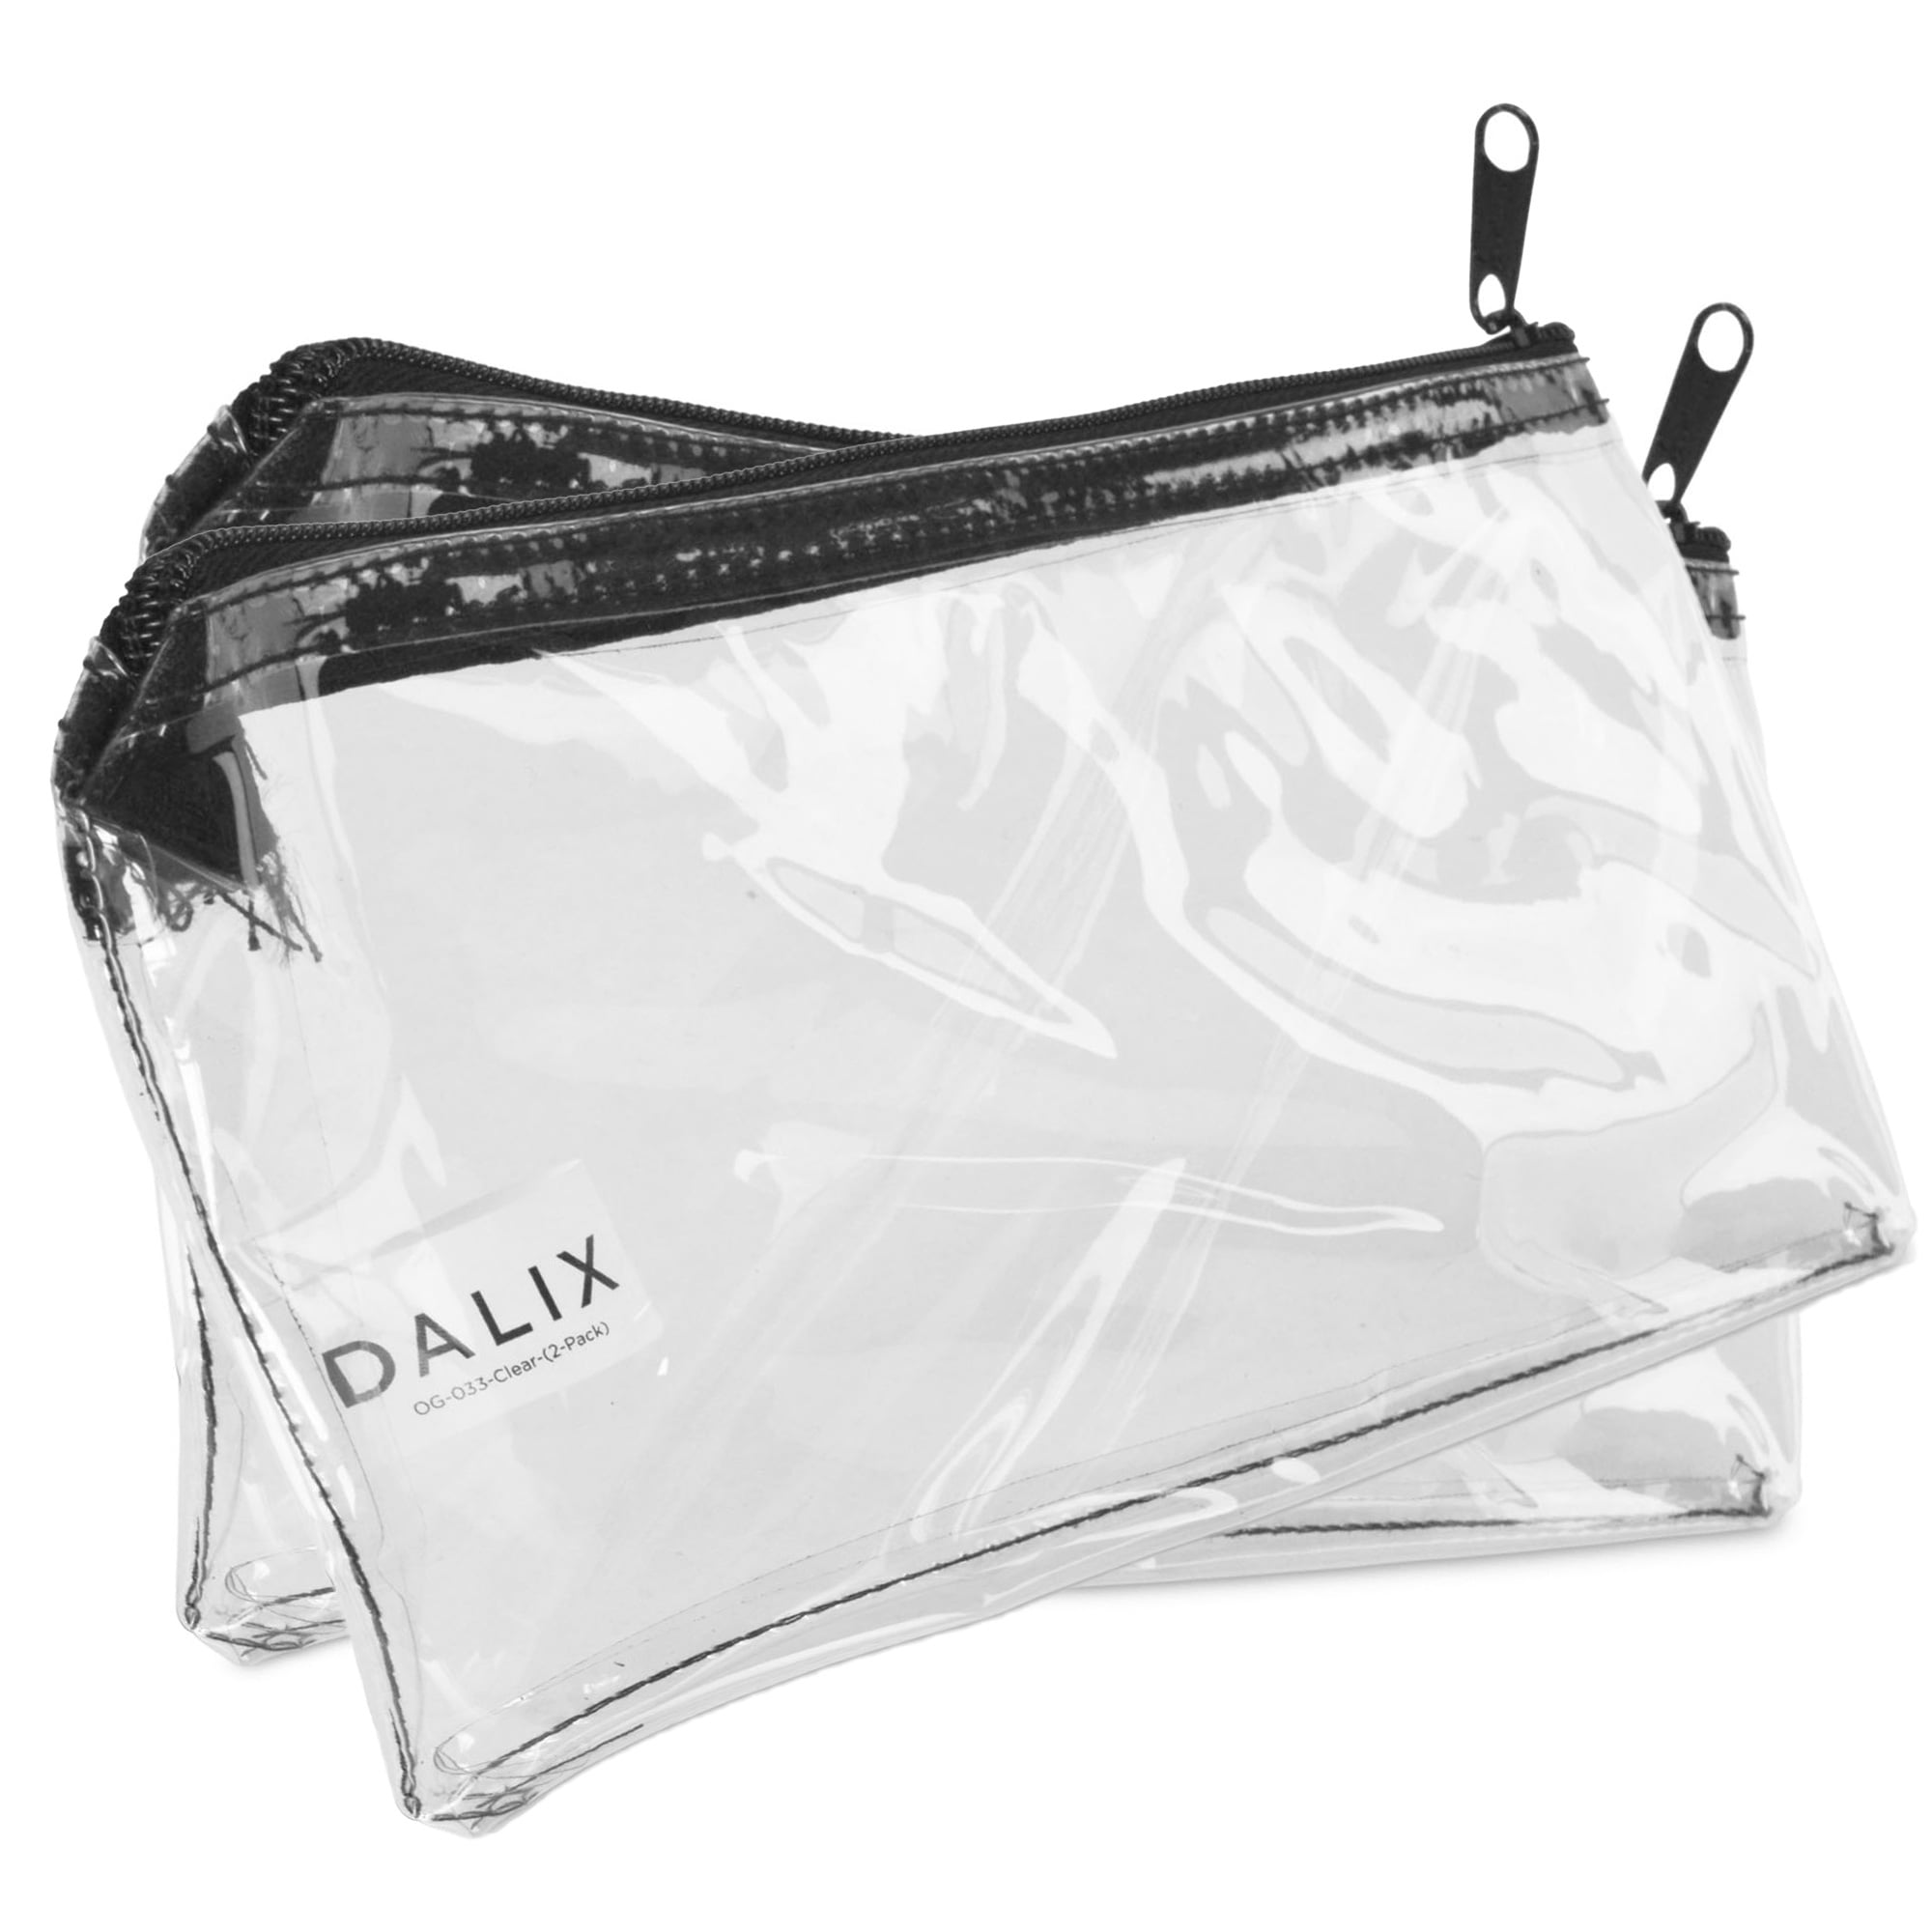 clear zipper travel makeup bag